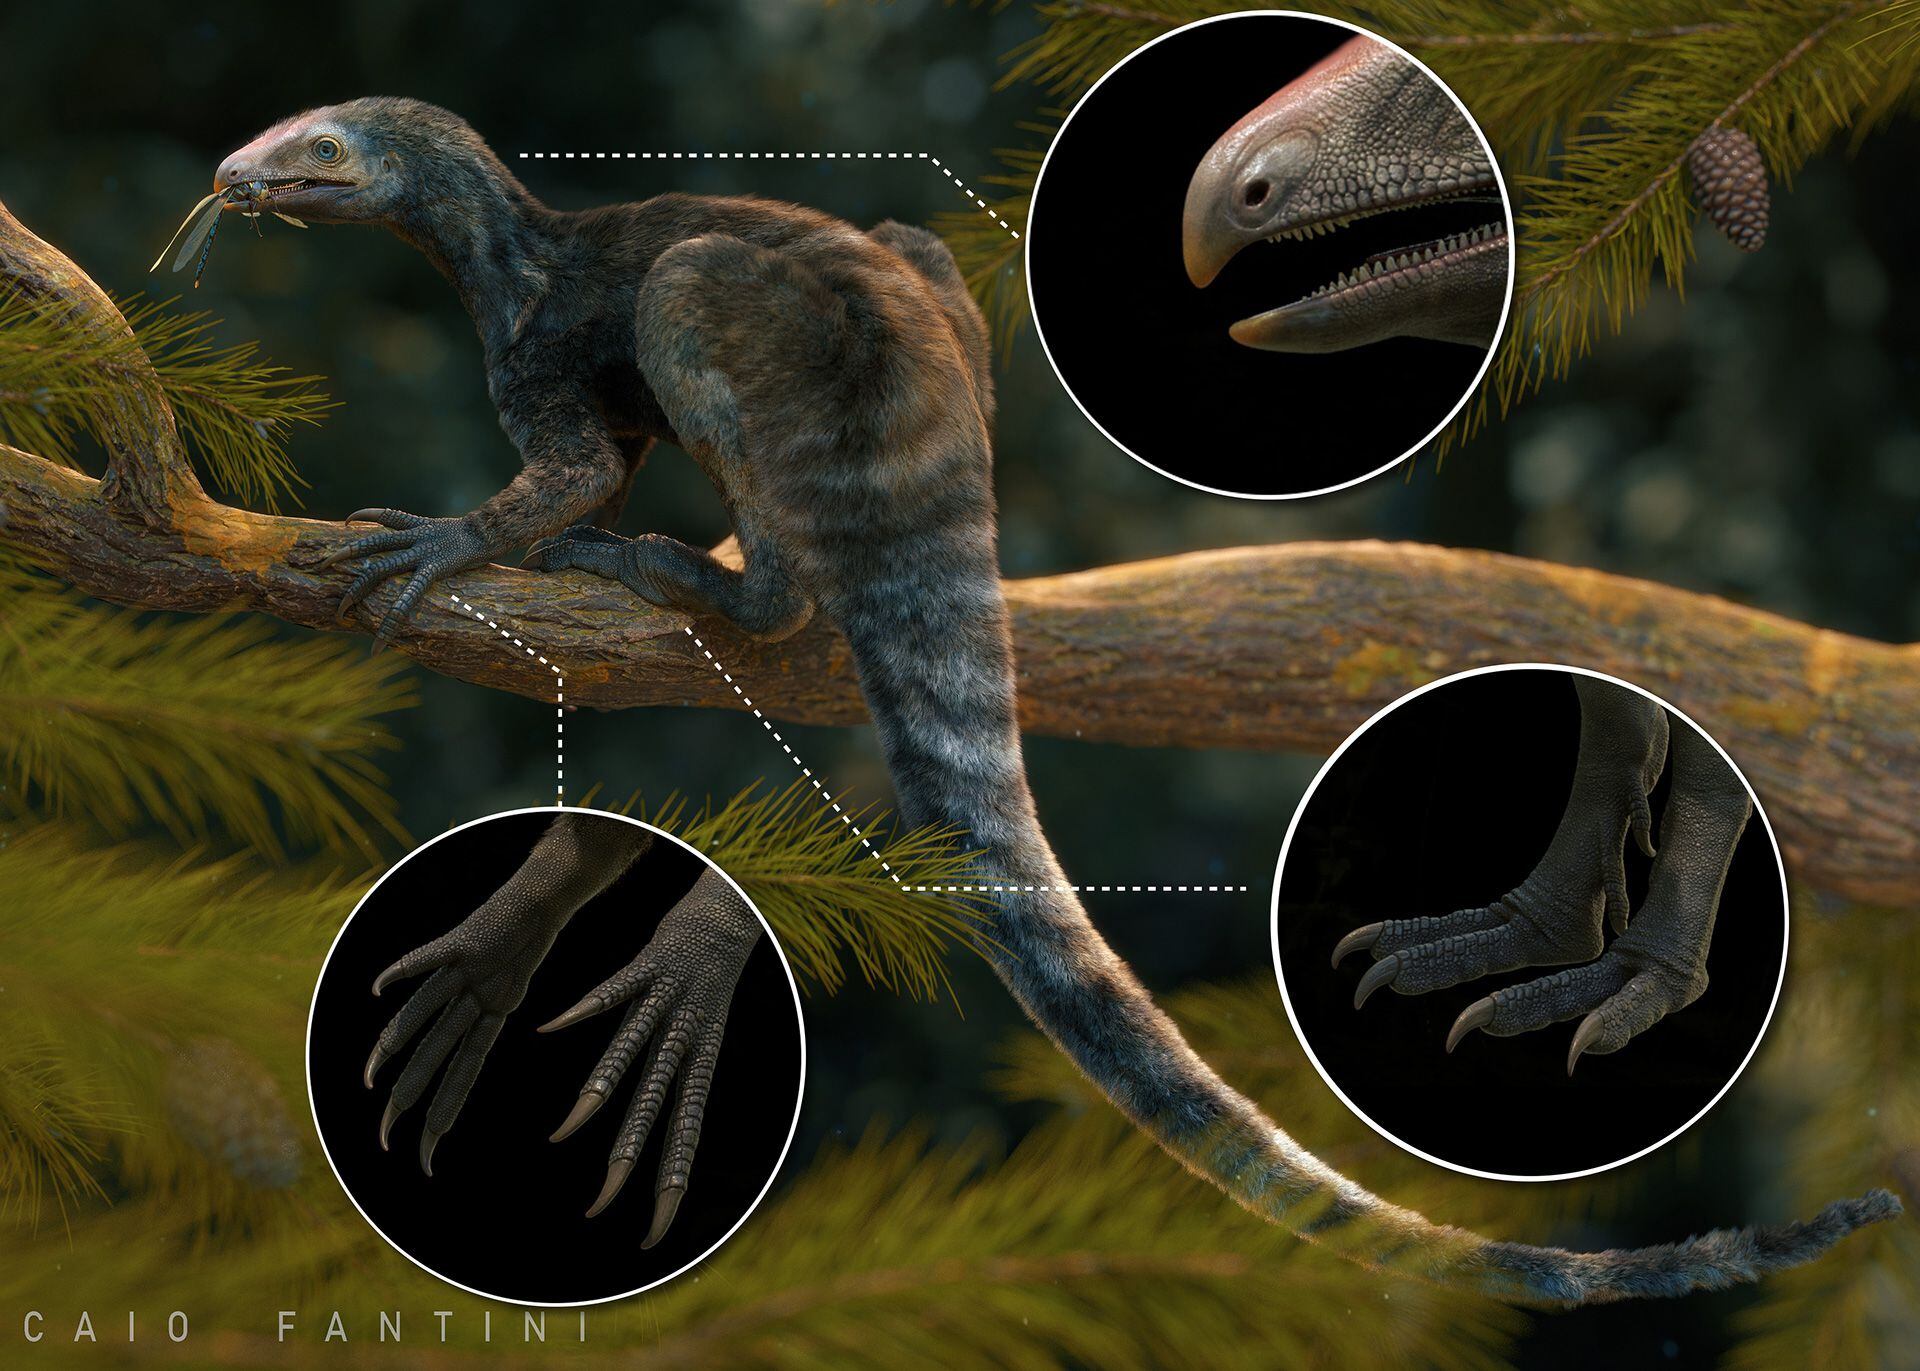 El Venetoraptor es un tipo de lagerpétido. El análisis comparativo de sus restos fósiles demostró su cercanía mayor con los pterosaurios/
Caio Fantini